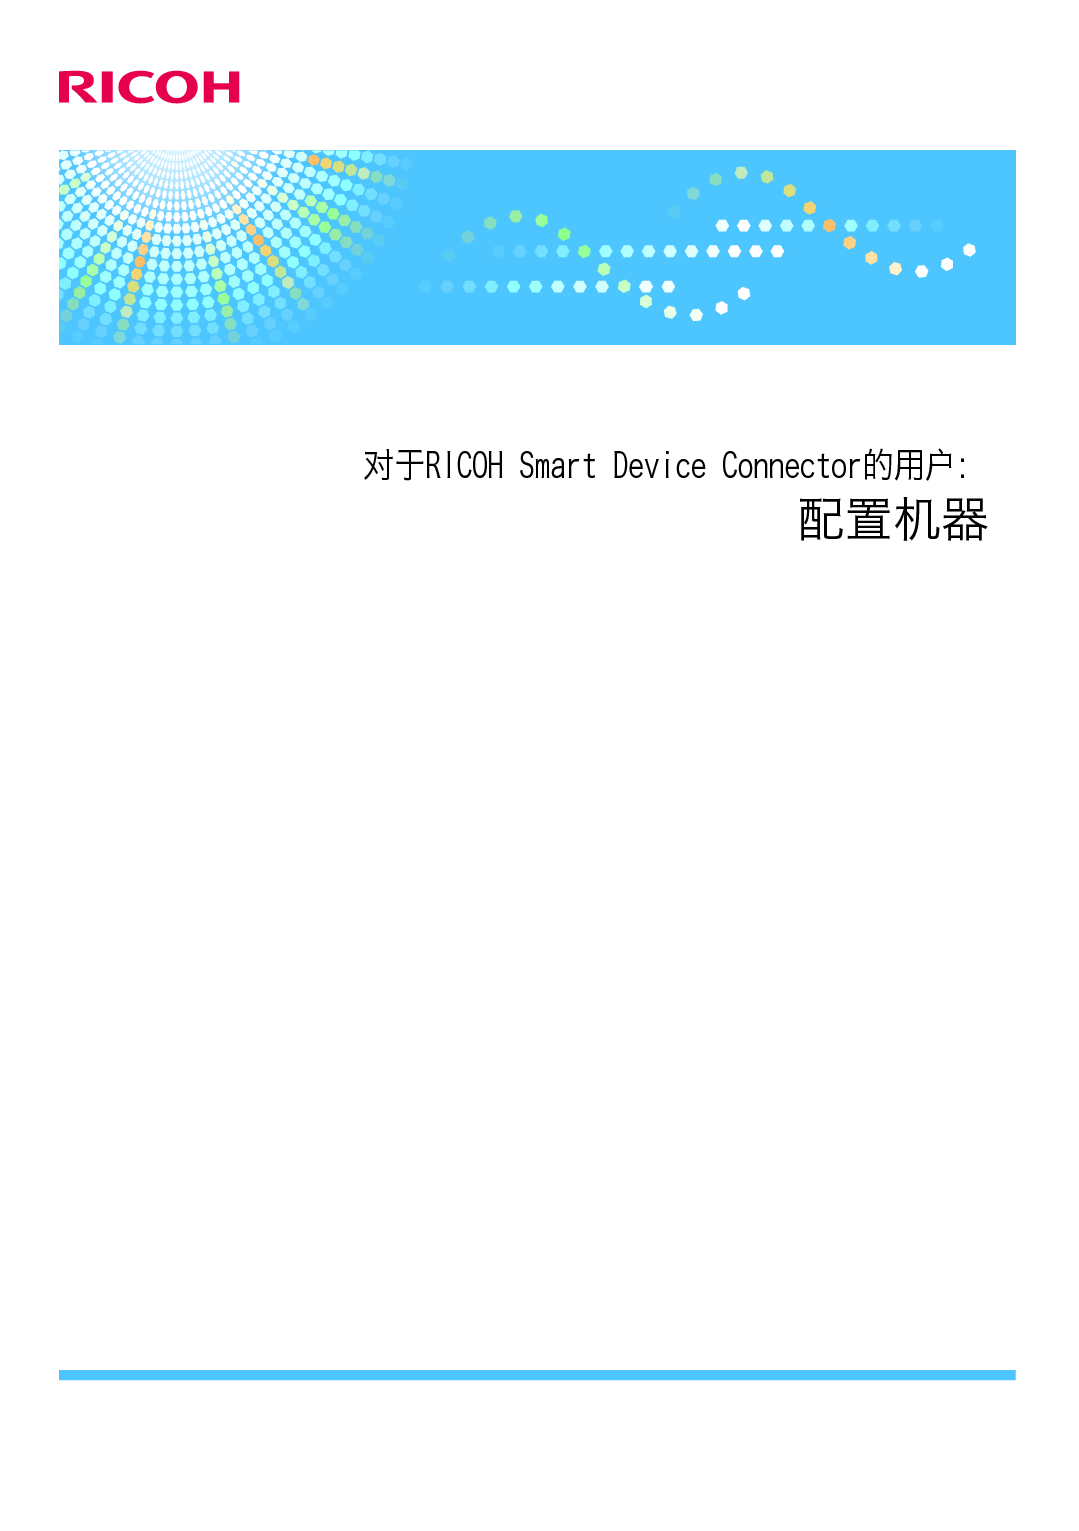 理光 Ricoh SP 3610SF Smart Device Connector 配置 使用说明书 封面